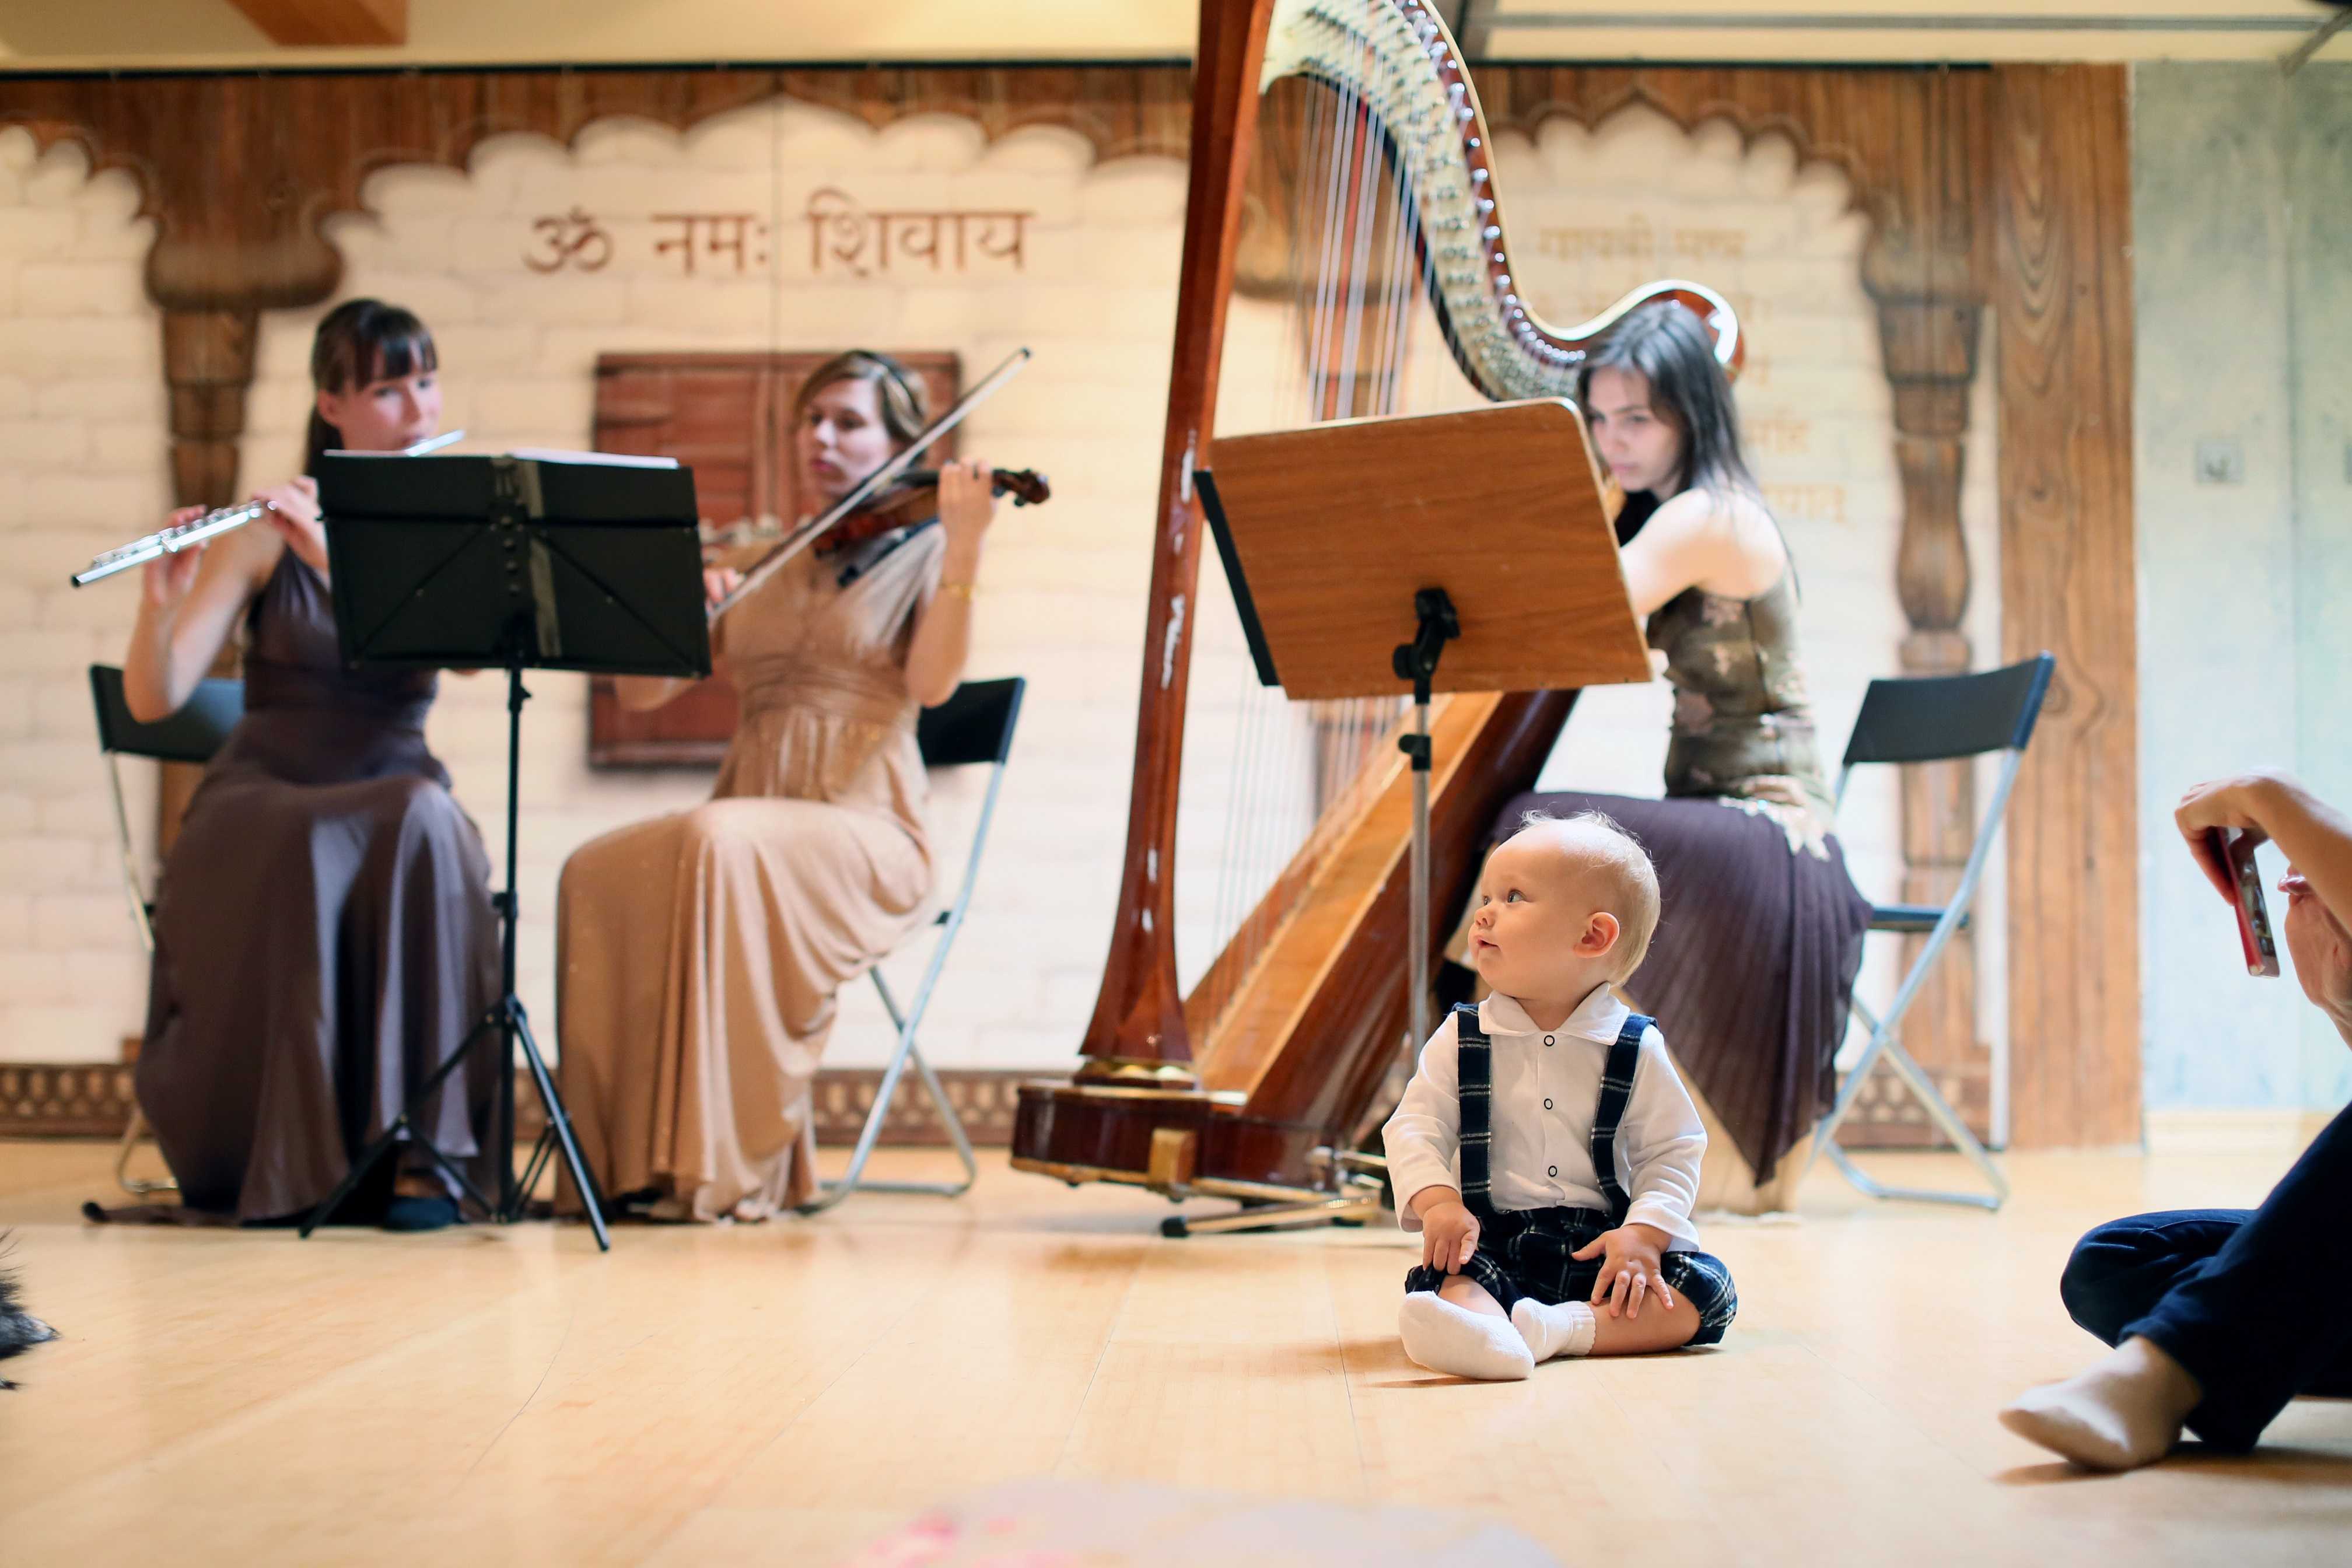 Слушание музыки танец. Музыкальный концерт для детей. Музыкальная классика для детей. Музыкальная культура ребенка. Музыкотерапия для детей.